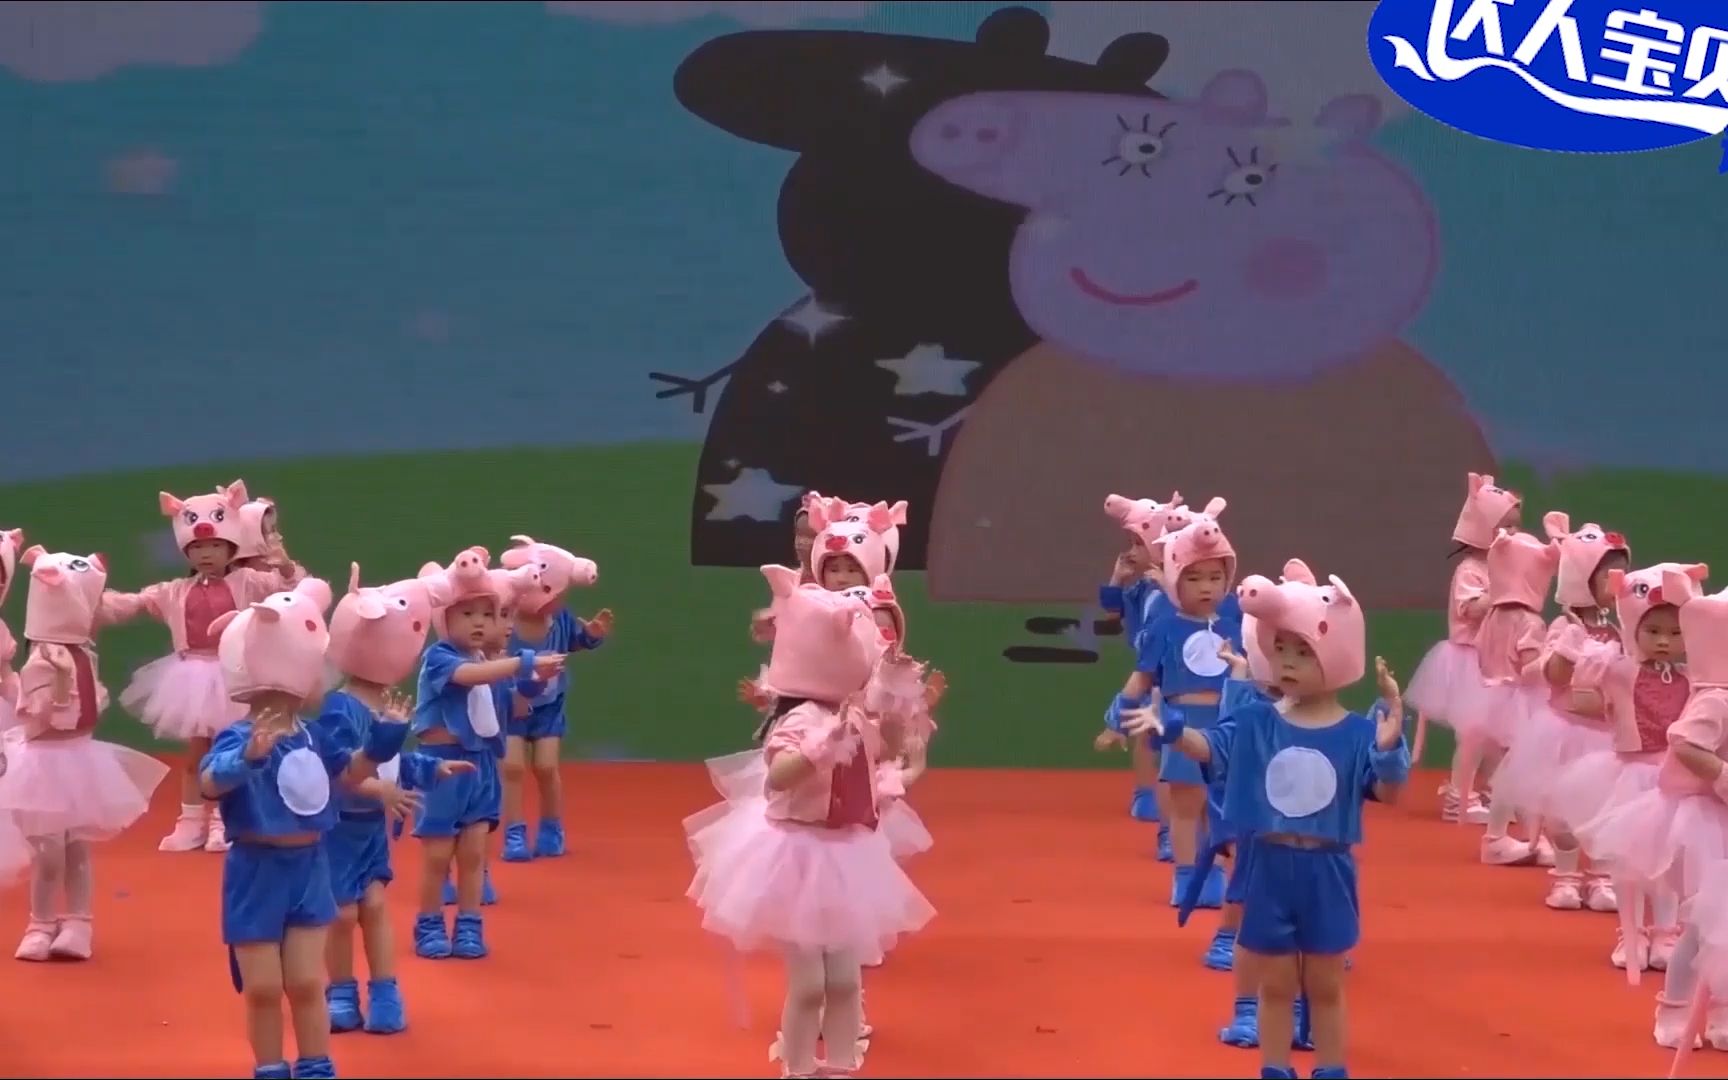 幼儿园小班舞蹈《小猪佩奇》，动作简单活泼可爱，宝贝们都喜欢跳